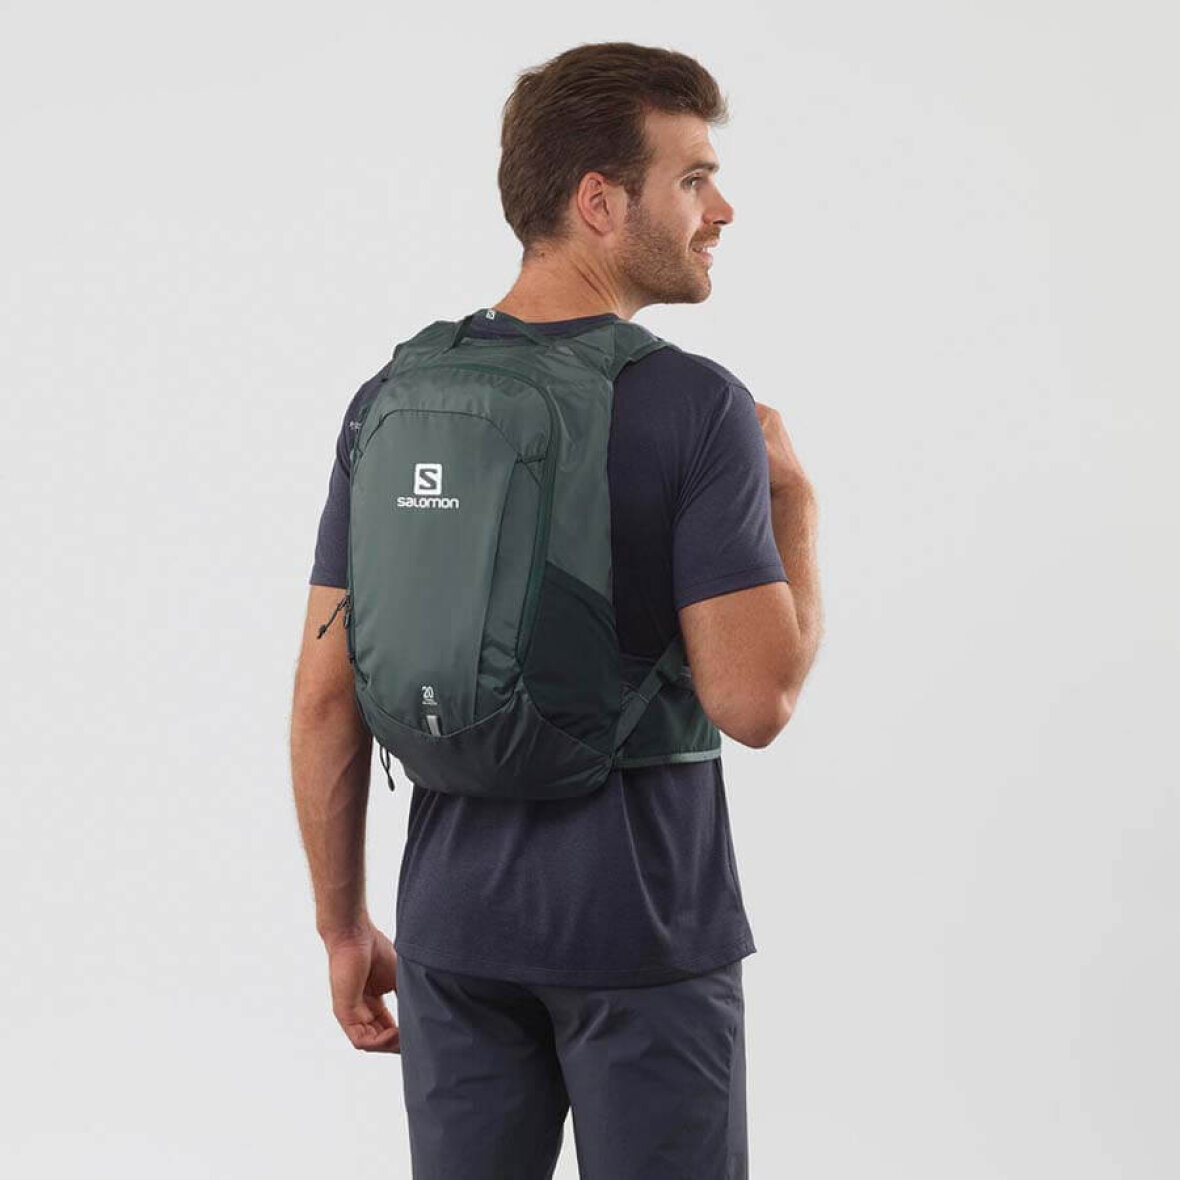 Salomon 20 Green - Let rygsæk smarte funktioner - her